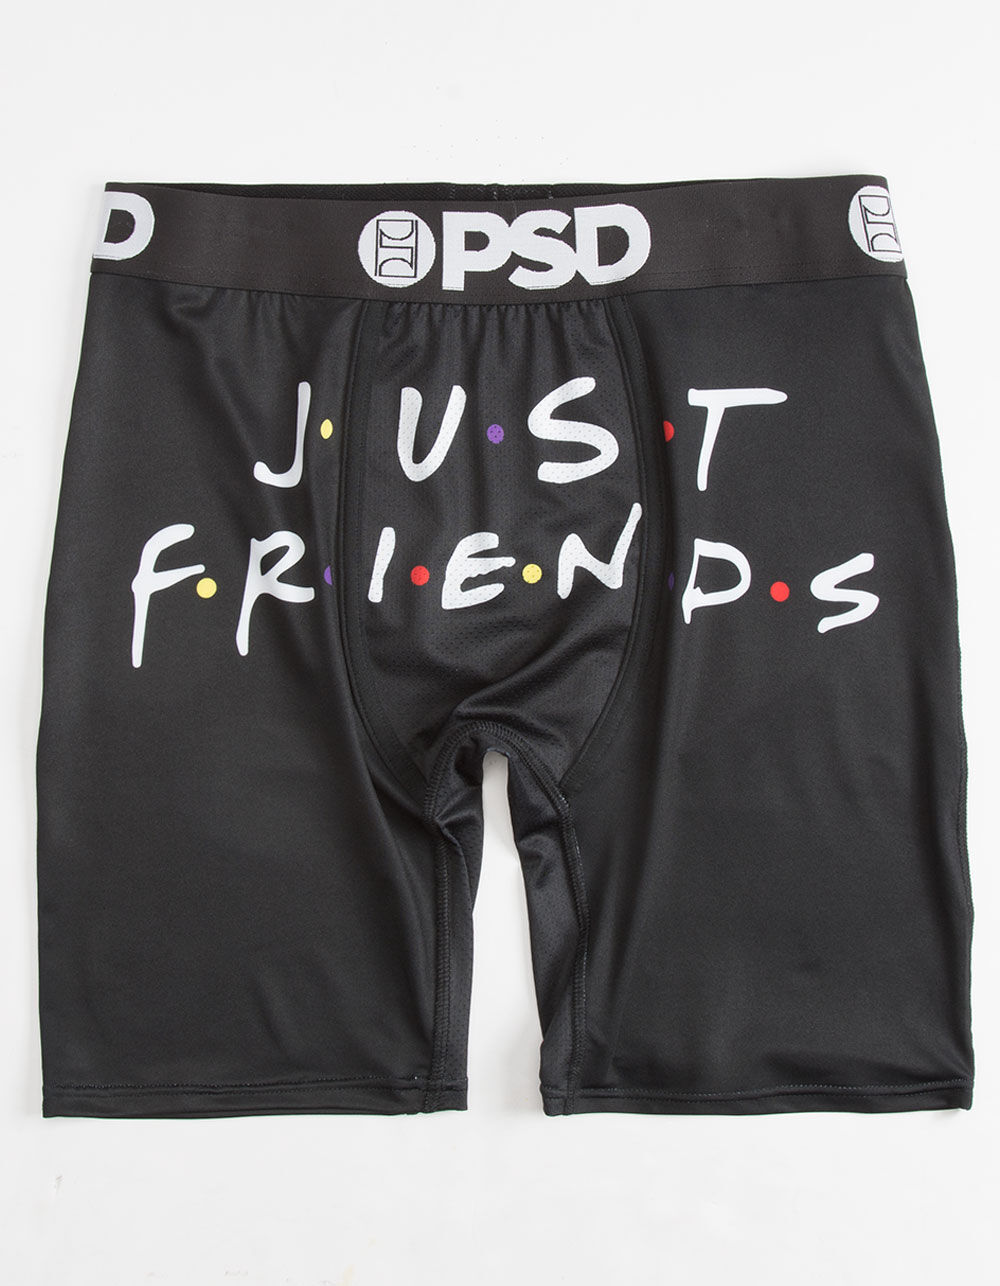 PSD Original Friends Mens Boxer Briefs - BLACK